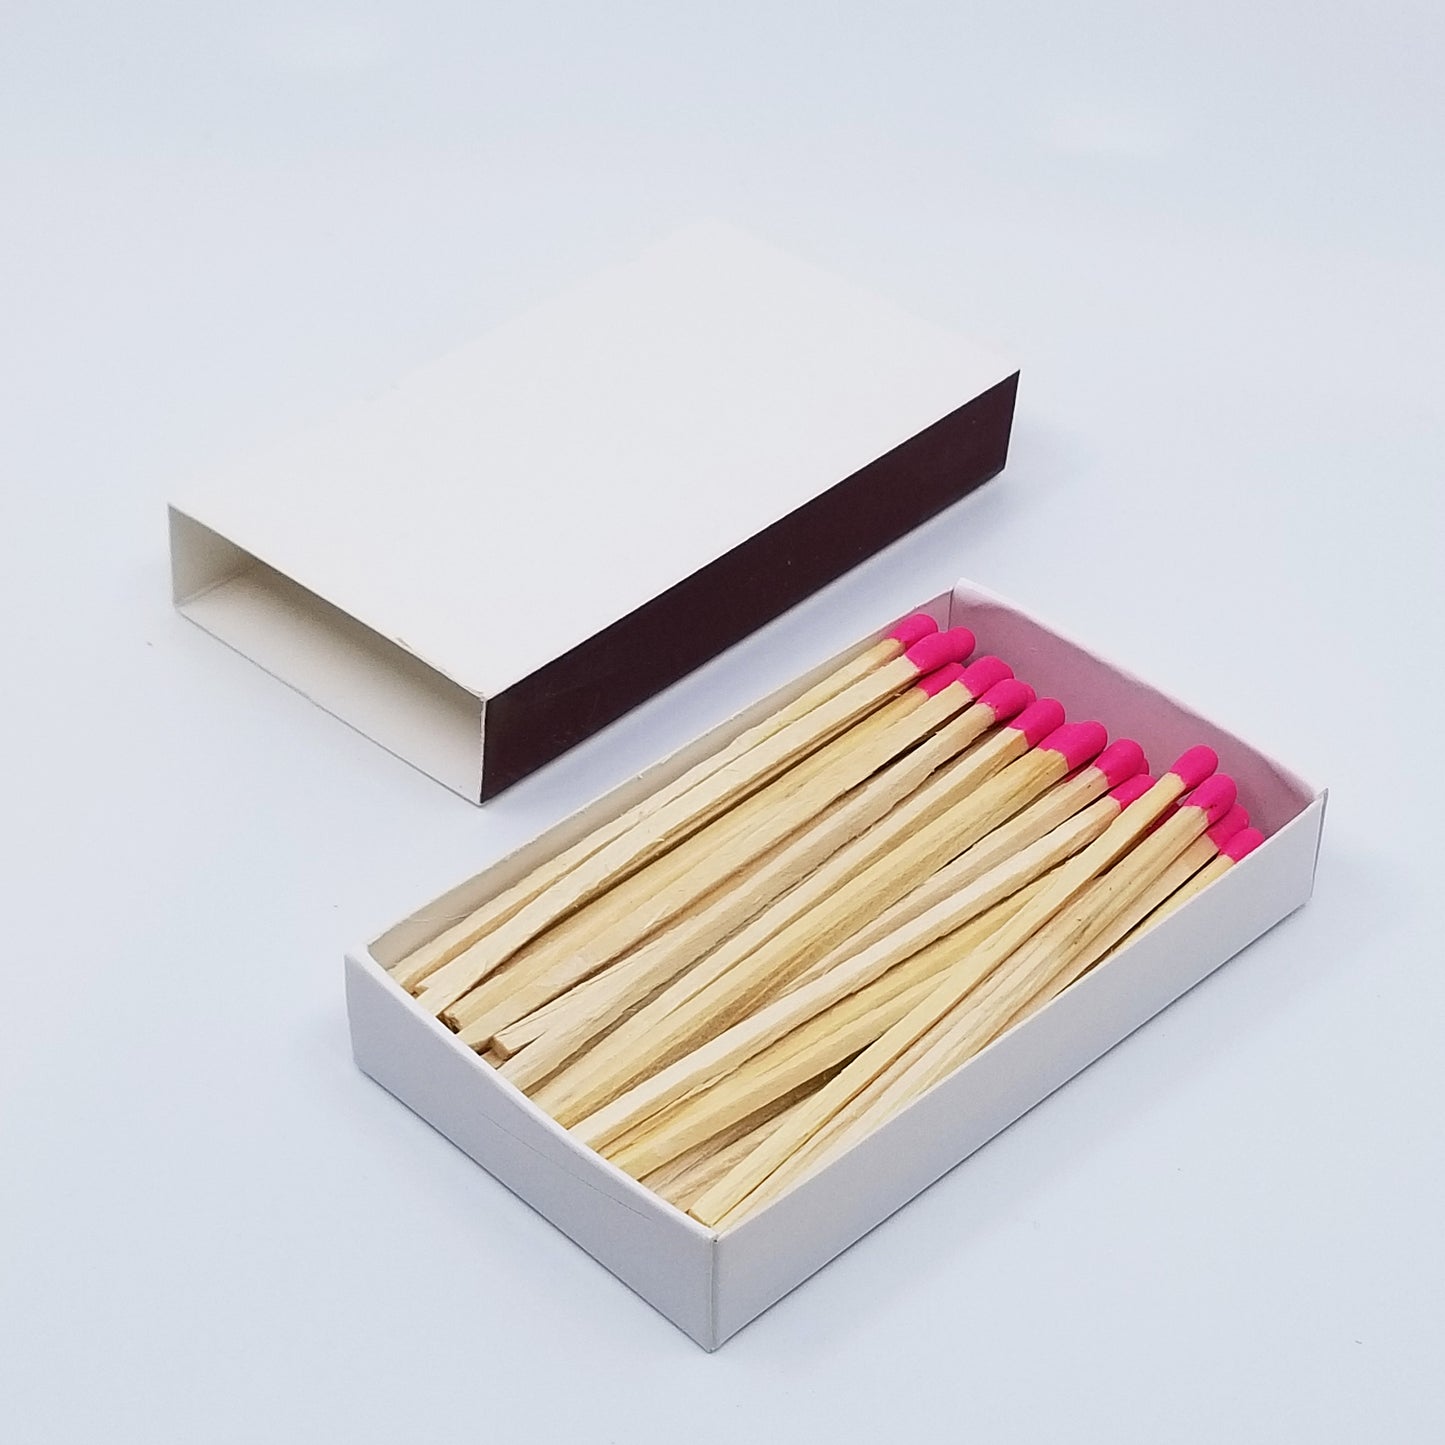 4" Matchsticks - Pink